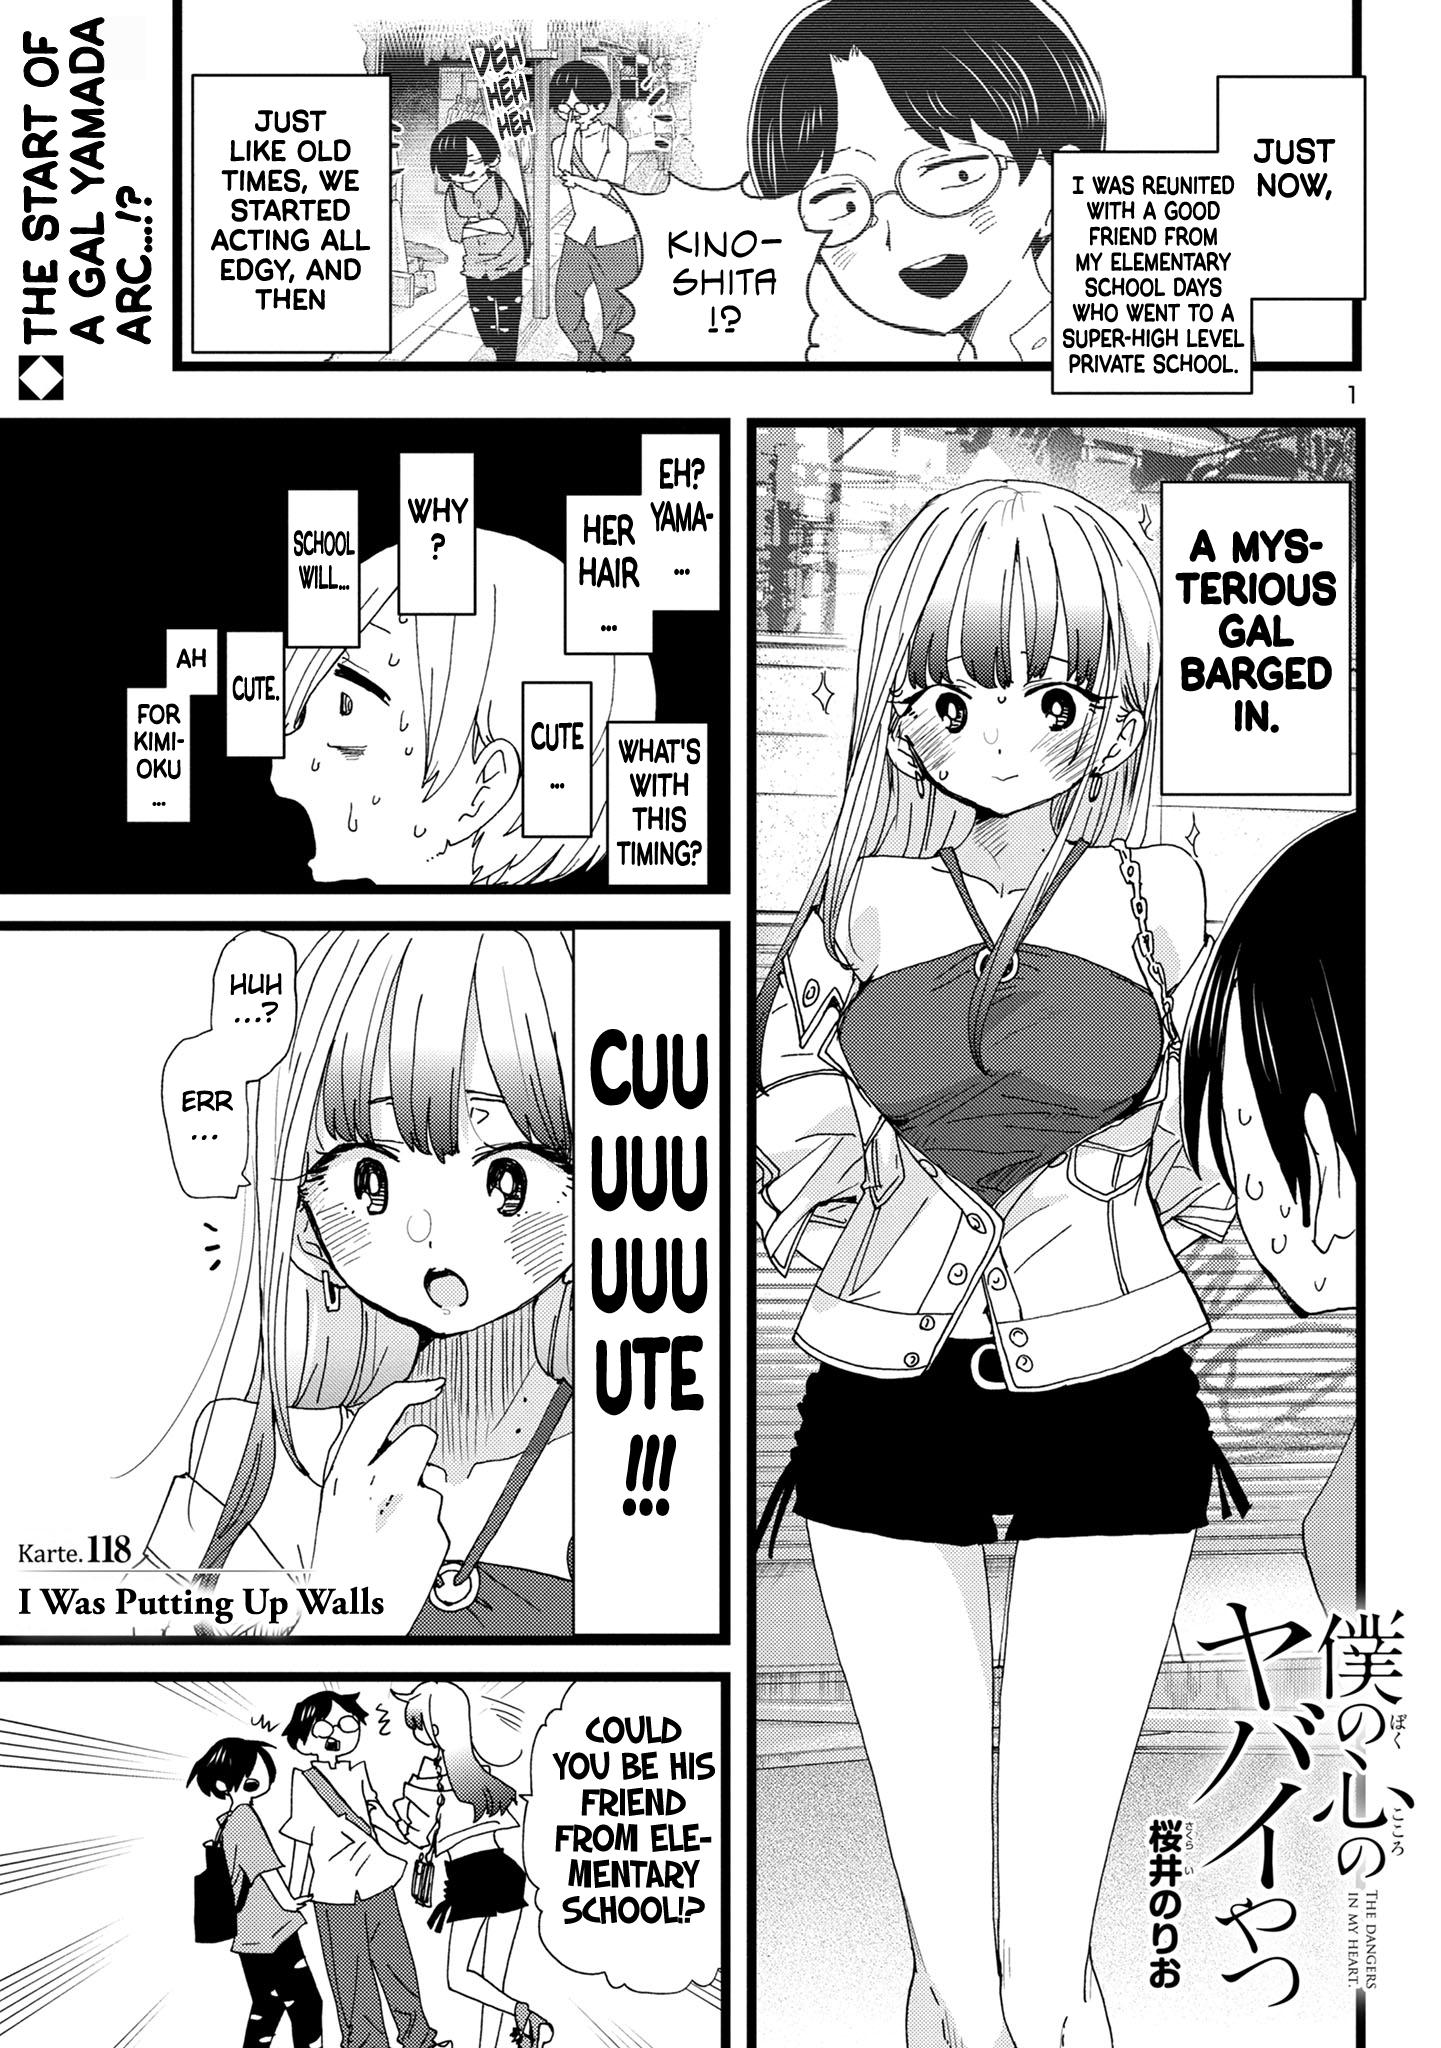 Boku no Kokoro no Yabai Yatsu Vol.7 Ch.89 Page 8 - Mangago